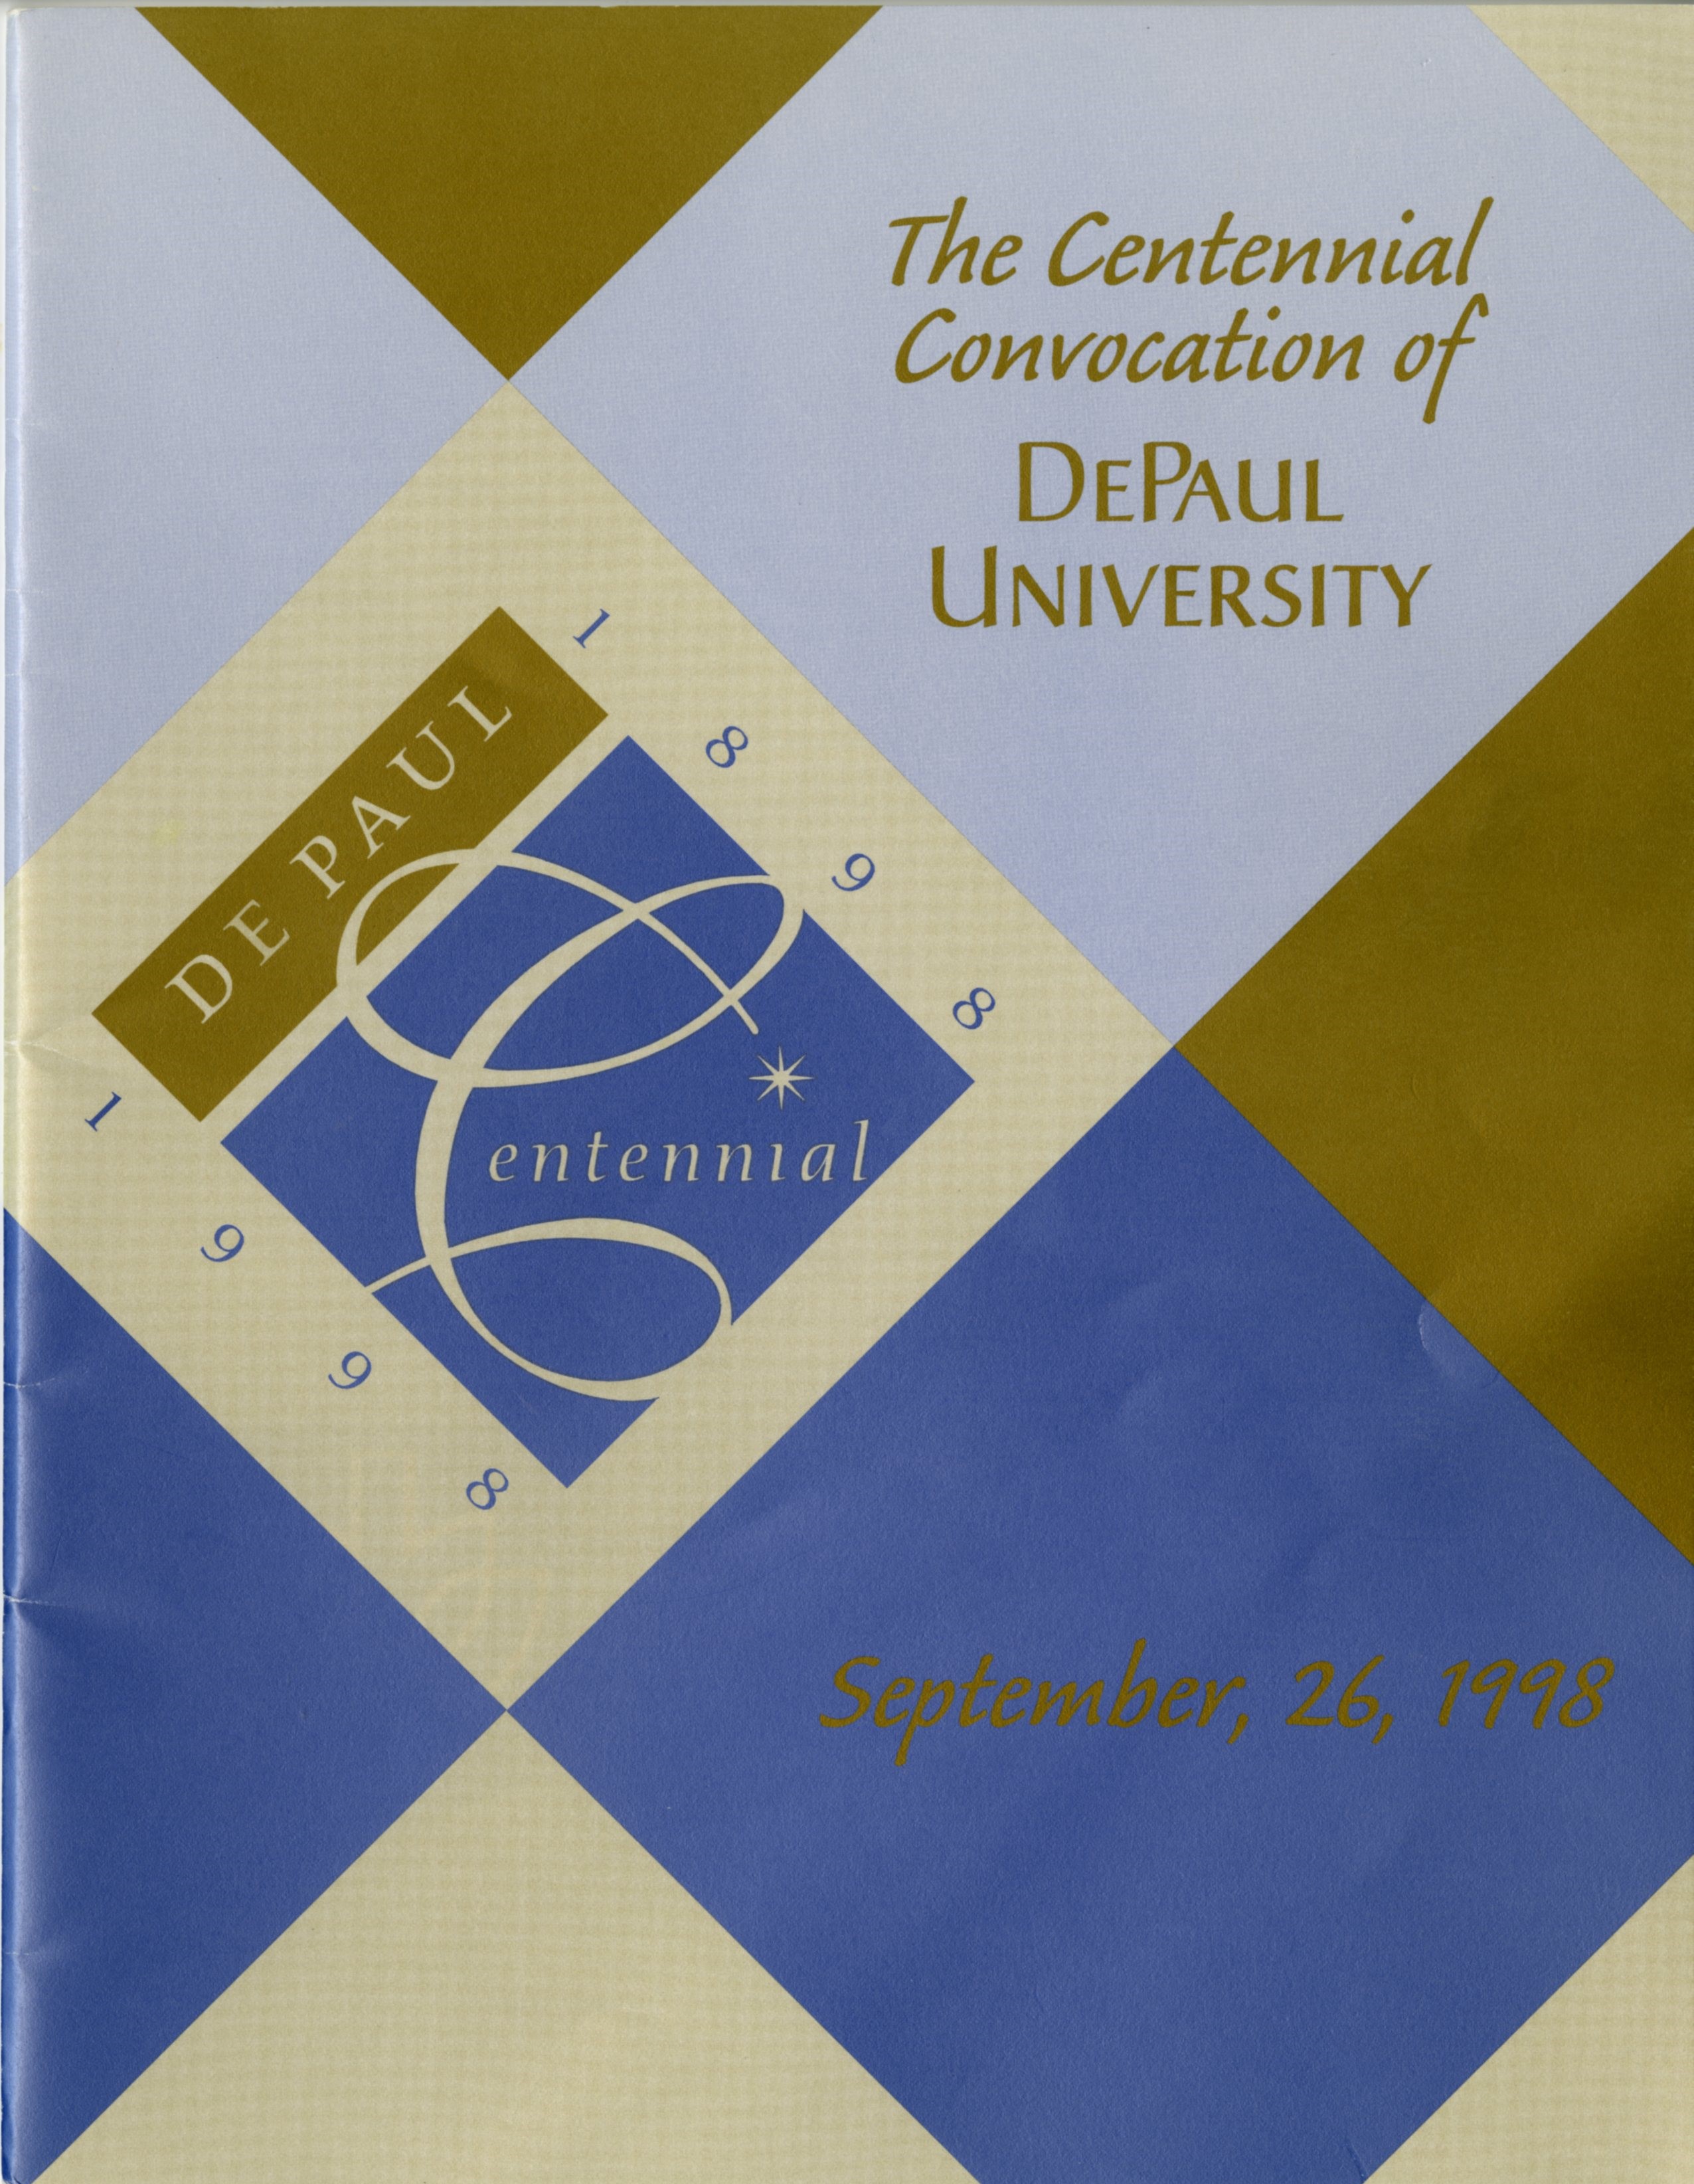 1998 Convocation Program